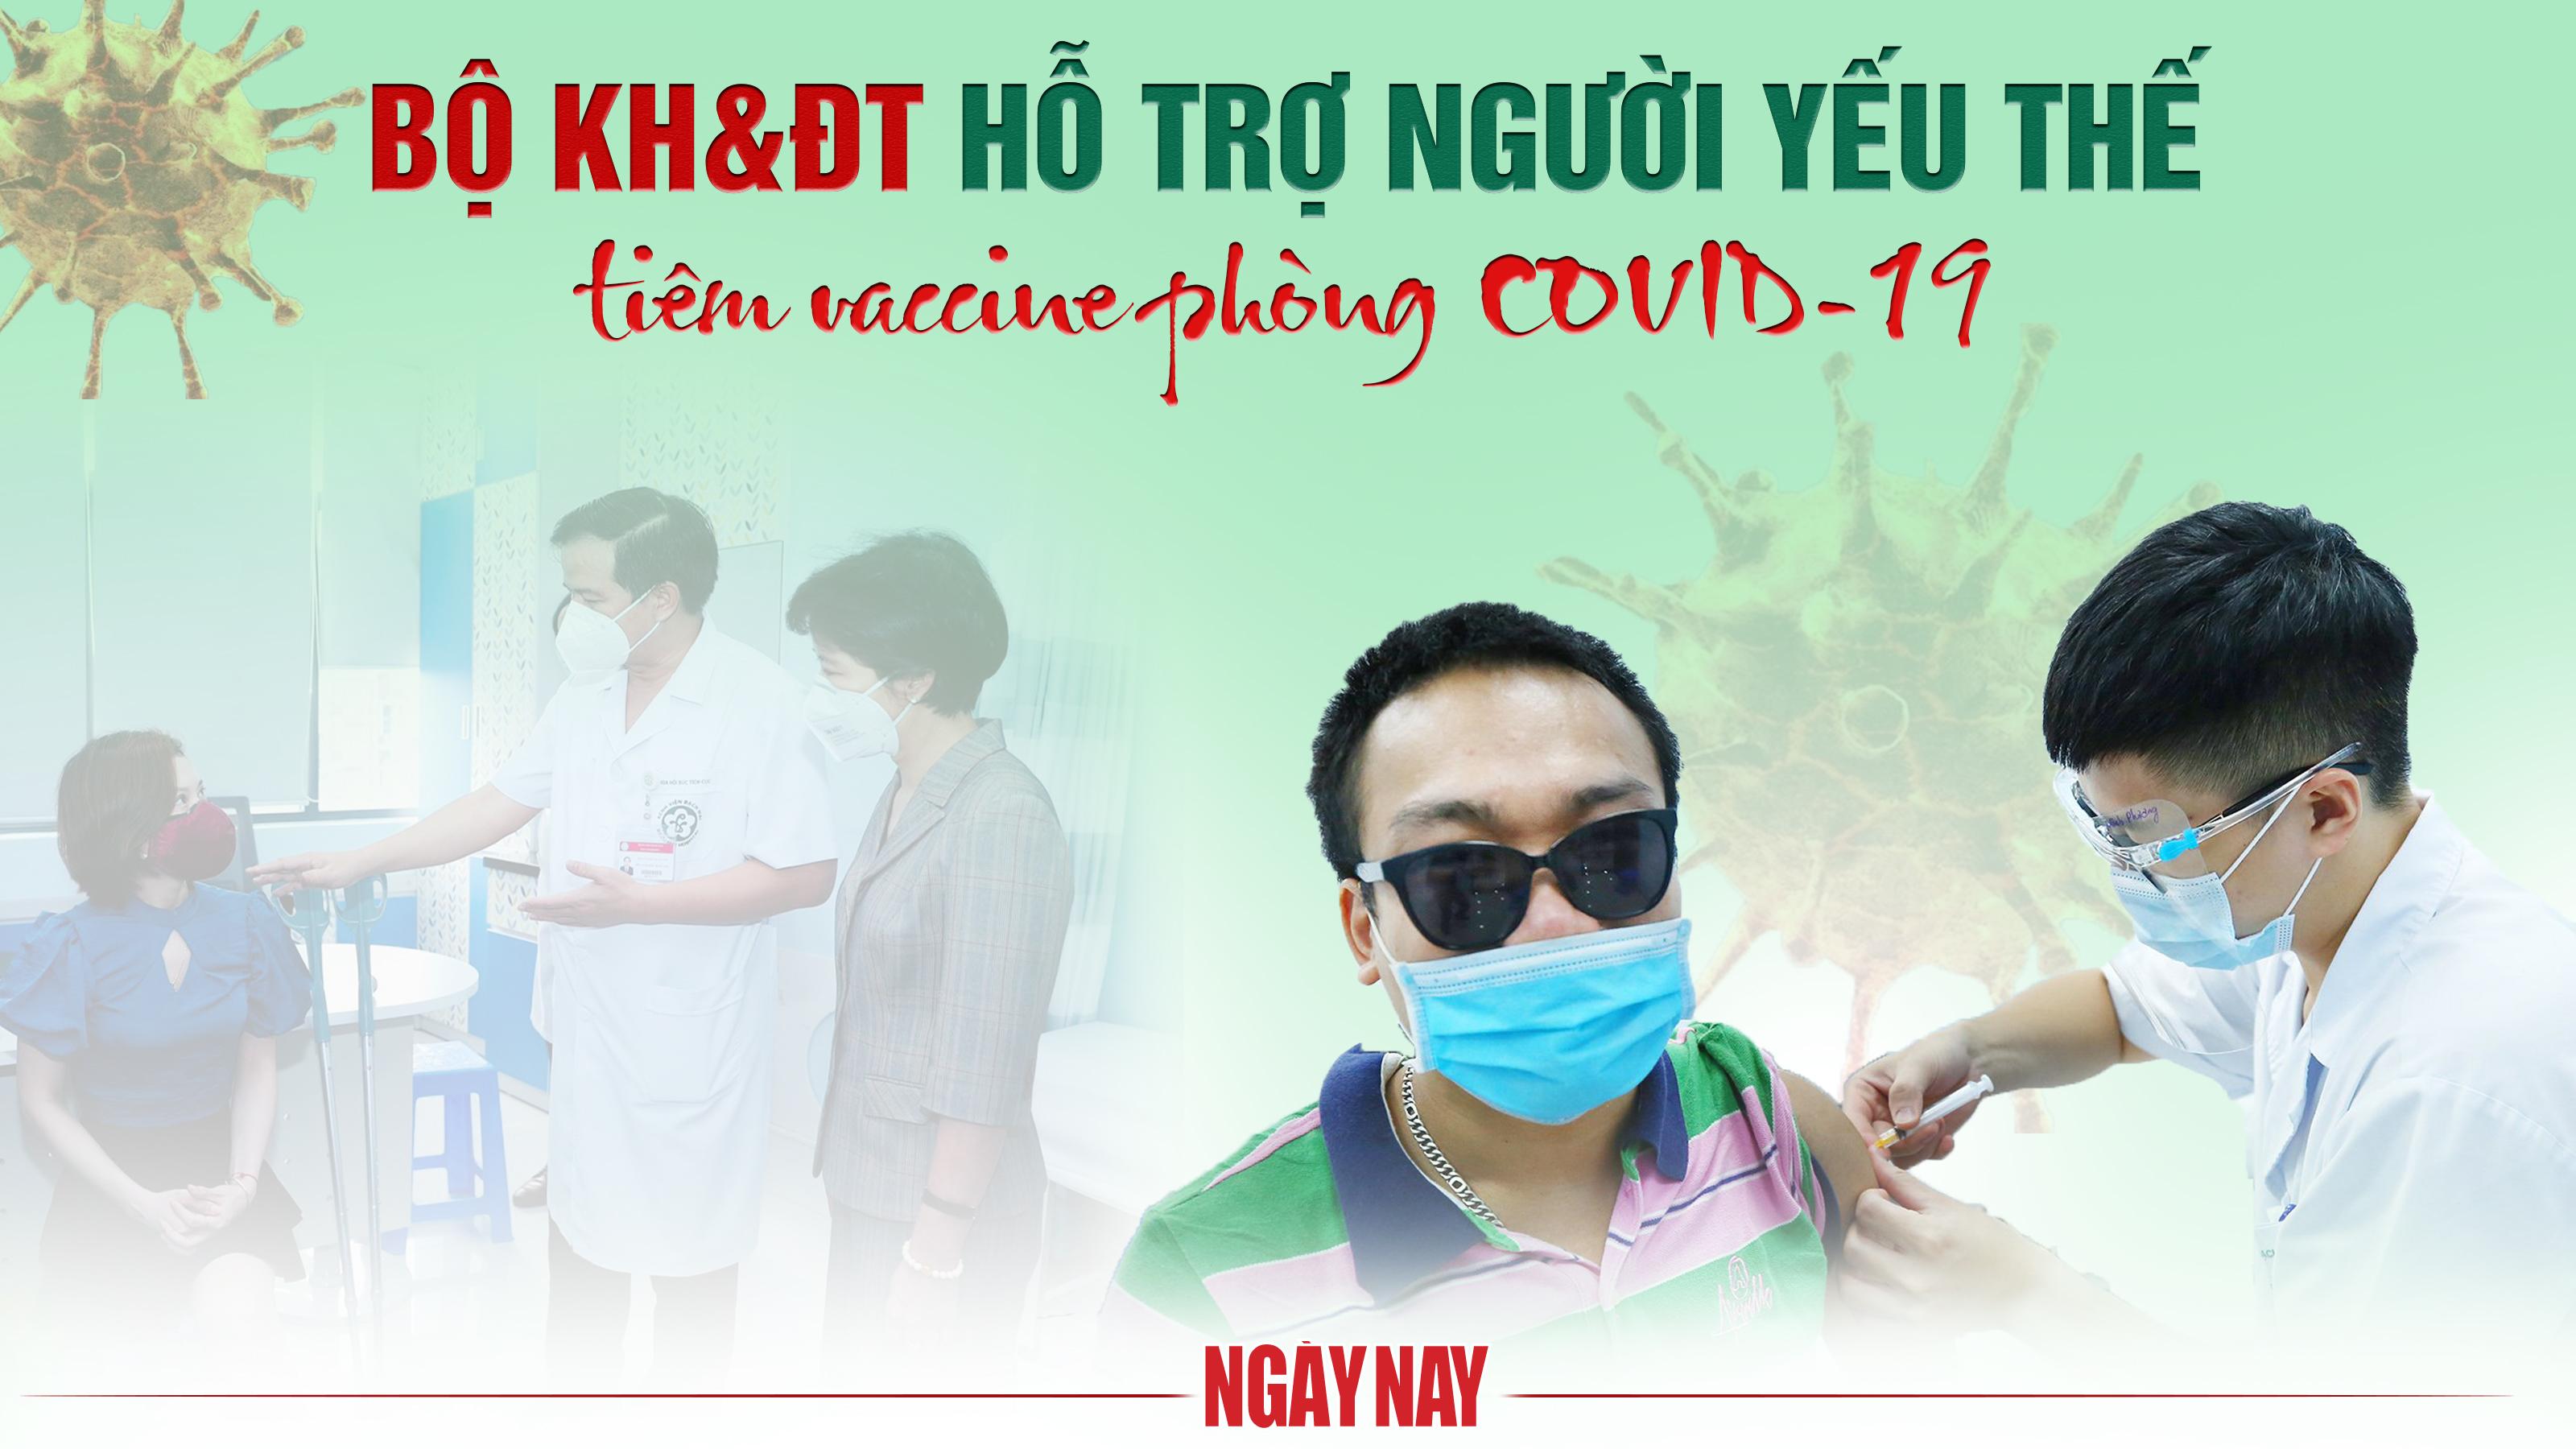 Bộ KH&ĐT hỗ trợ người yếu thế tiêm vaccine phòng COVID-19